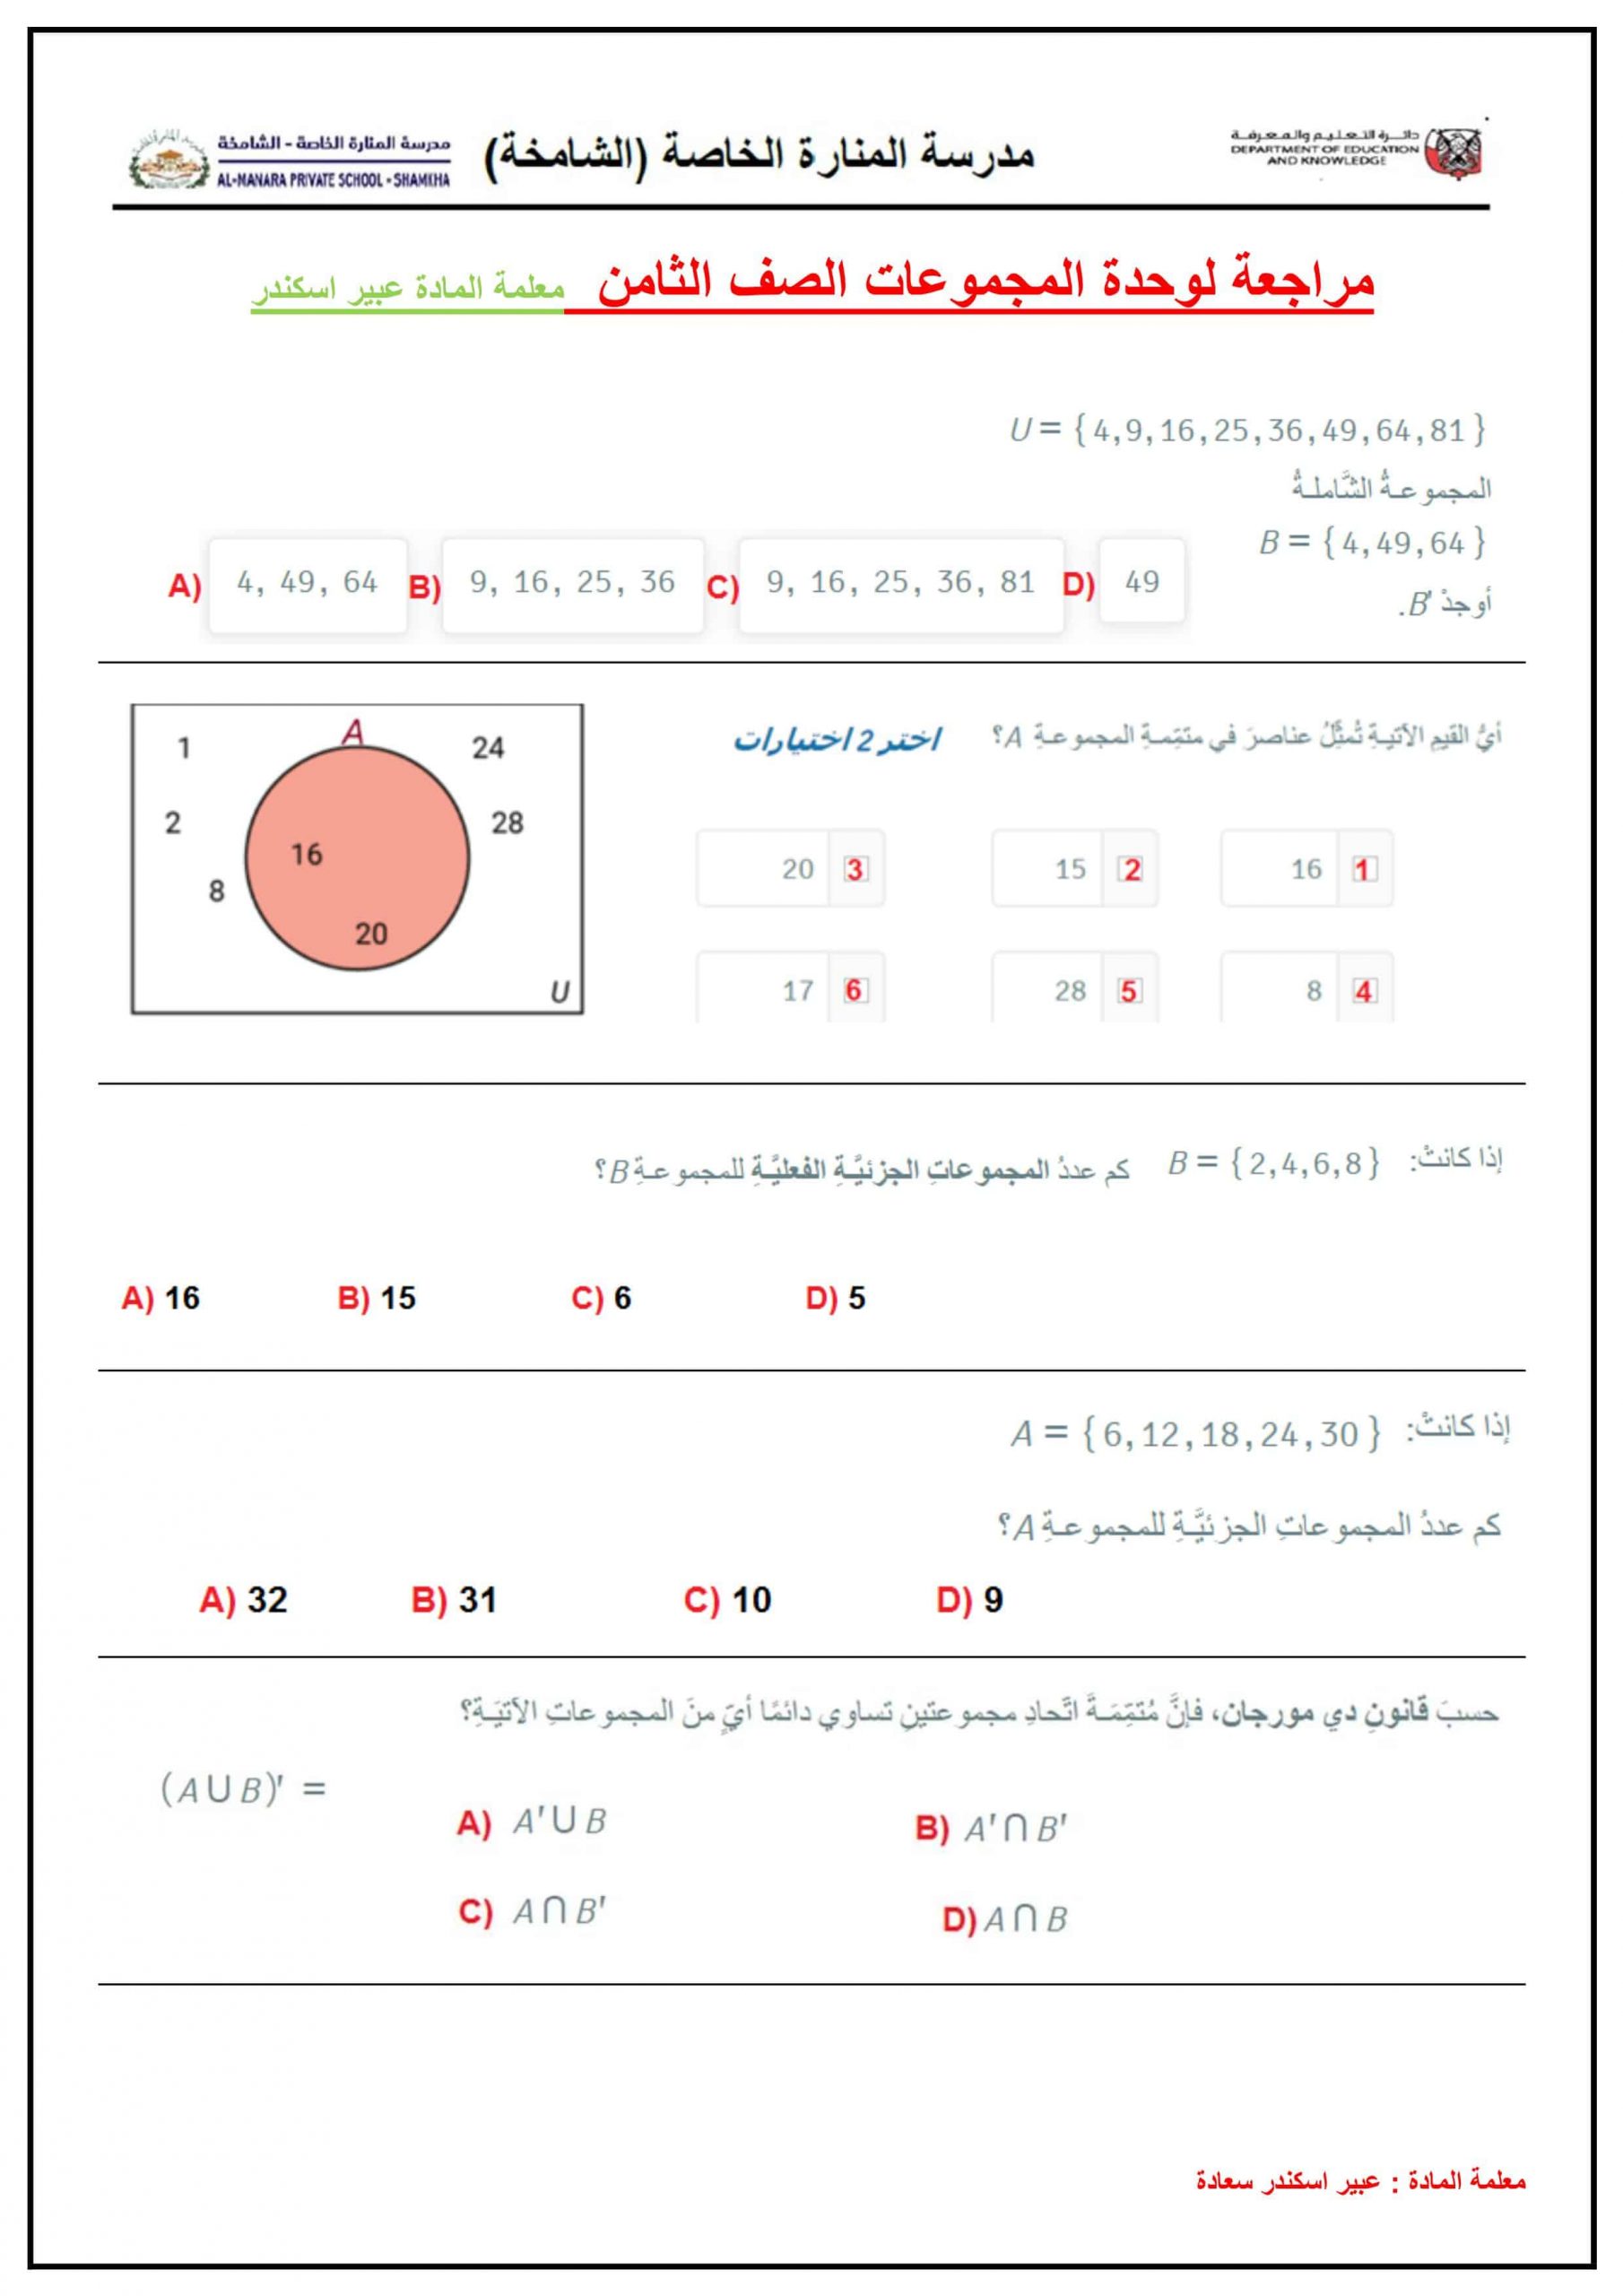 أوراق عمل مراجعة وحدة المجموعات الصف الثامن مادة الرياضيات المتكاملة